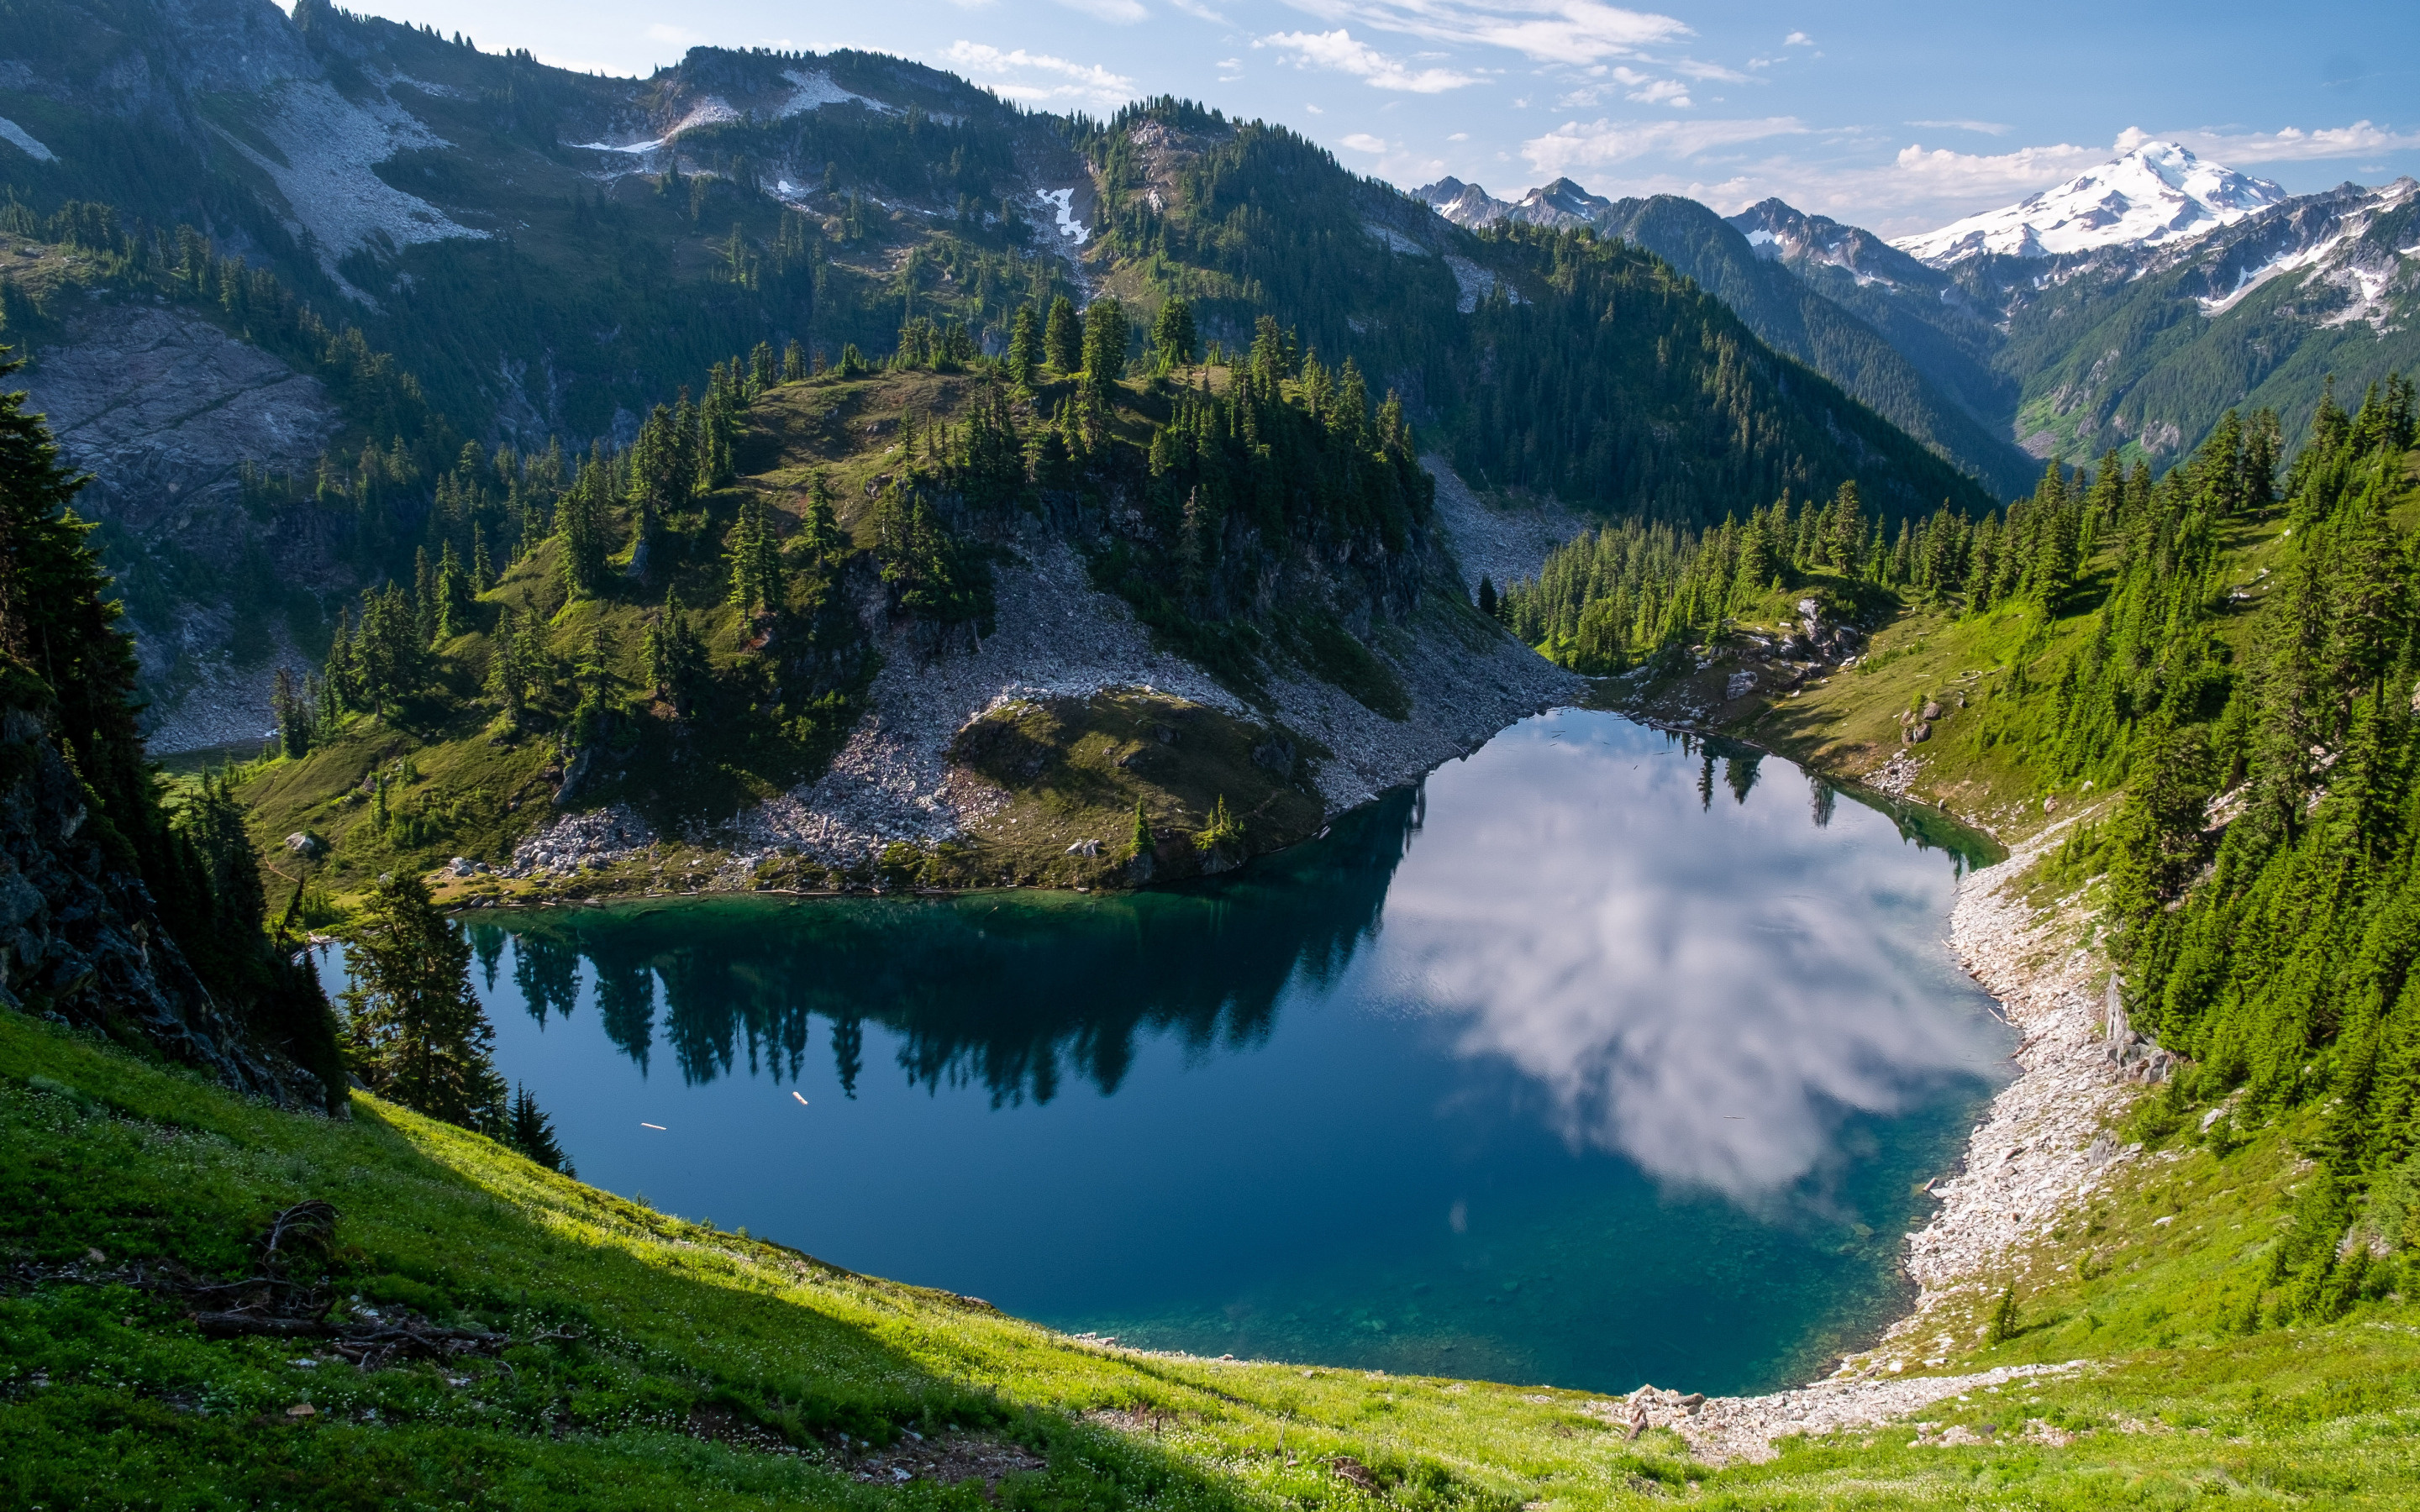 Glacier Park wallpapers, Mountain paradise, Scenic landscape, HD pictures, 2880x1800 HD Desktop